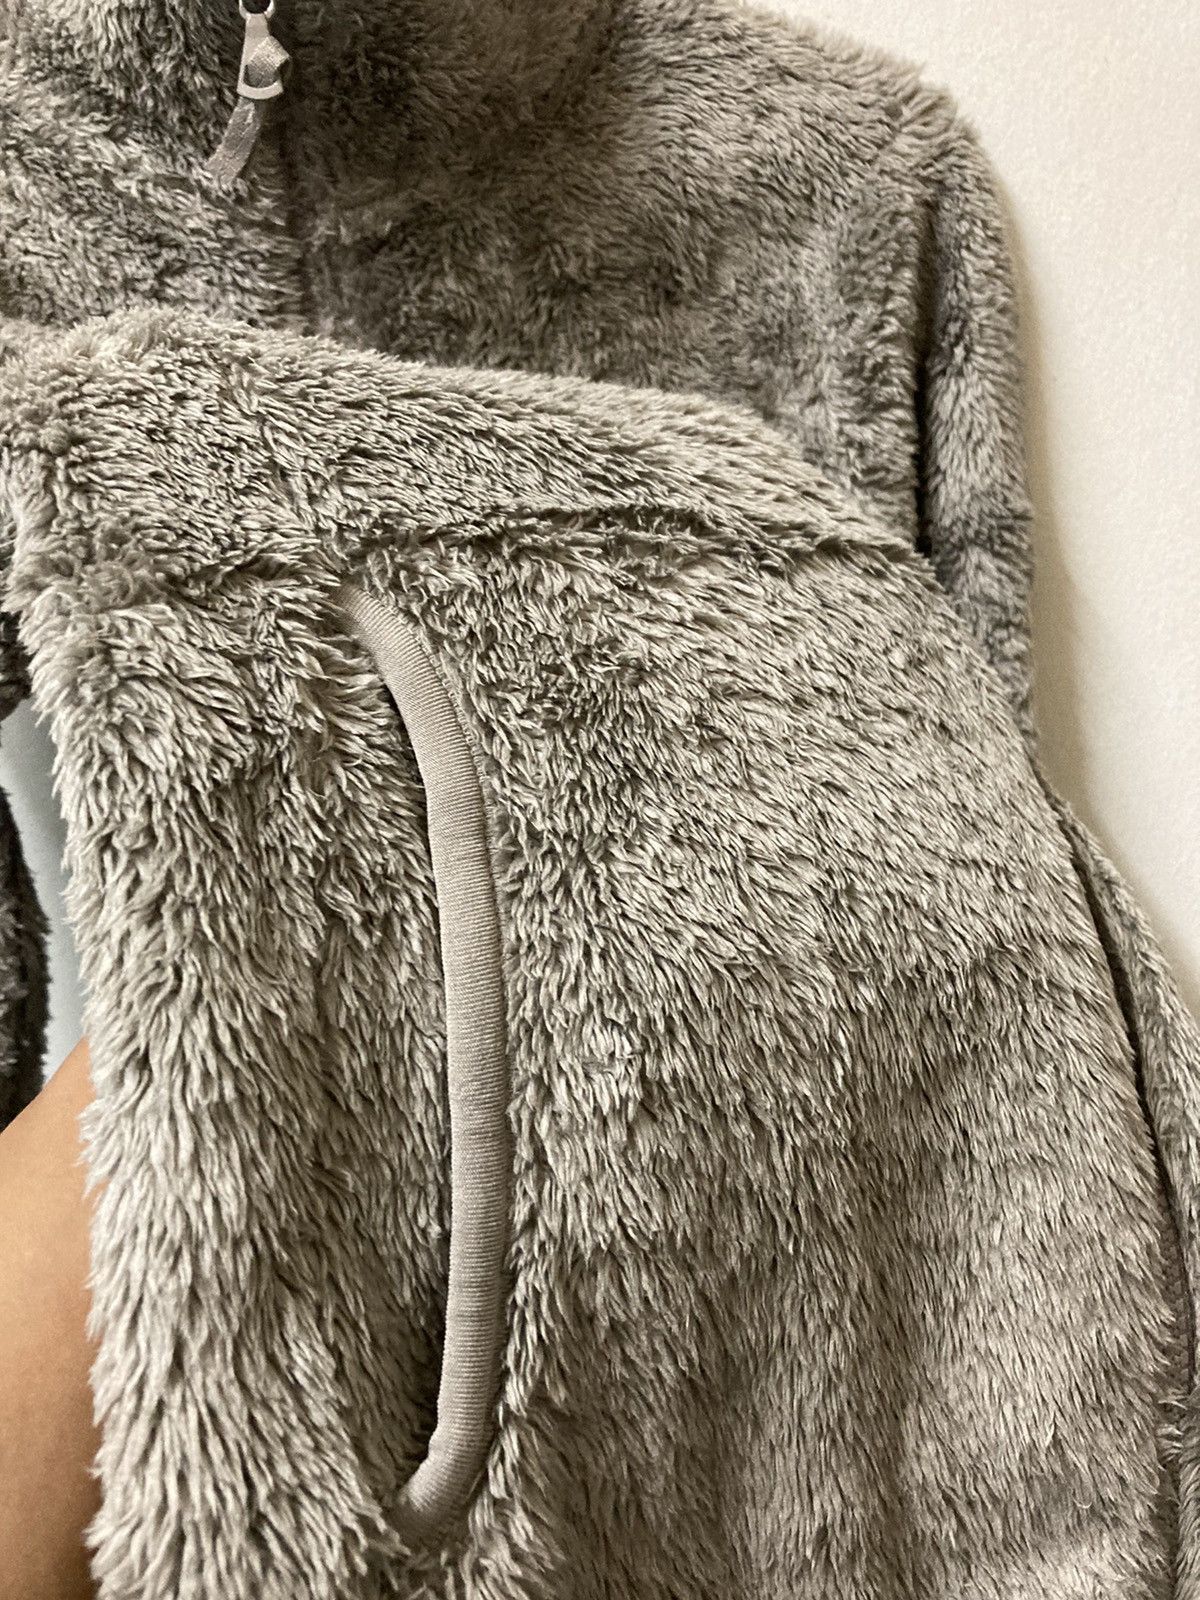 Uniqlo Fluffy Yarn Fleece Full Zipper Long Sleeve Jacket - 9